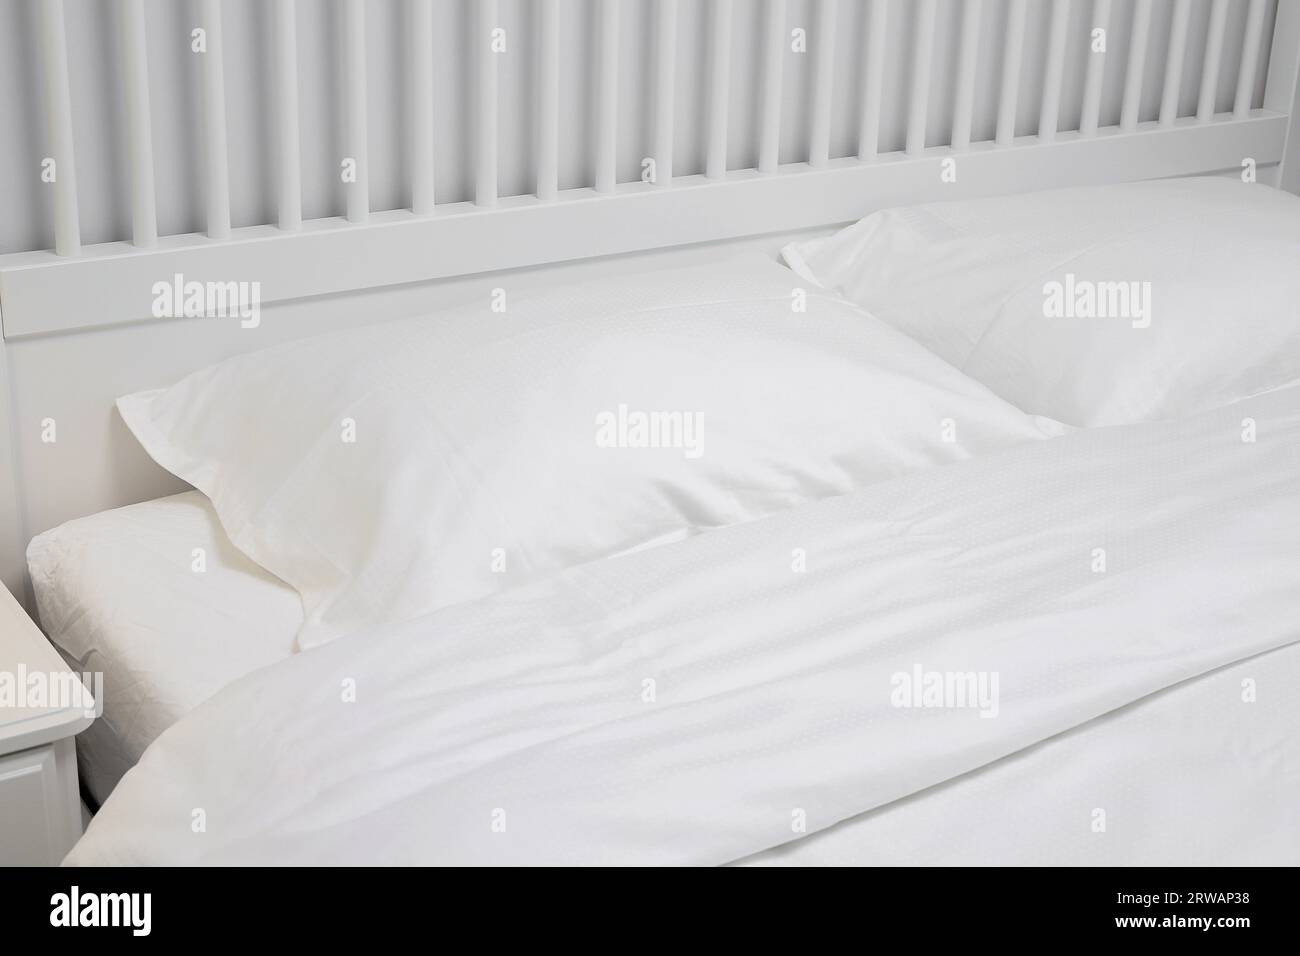 Cuscini bianchi vicini al letto Foto Stock